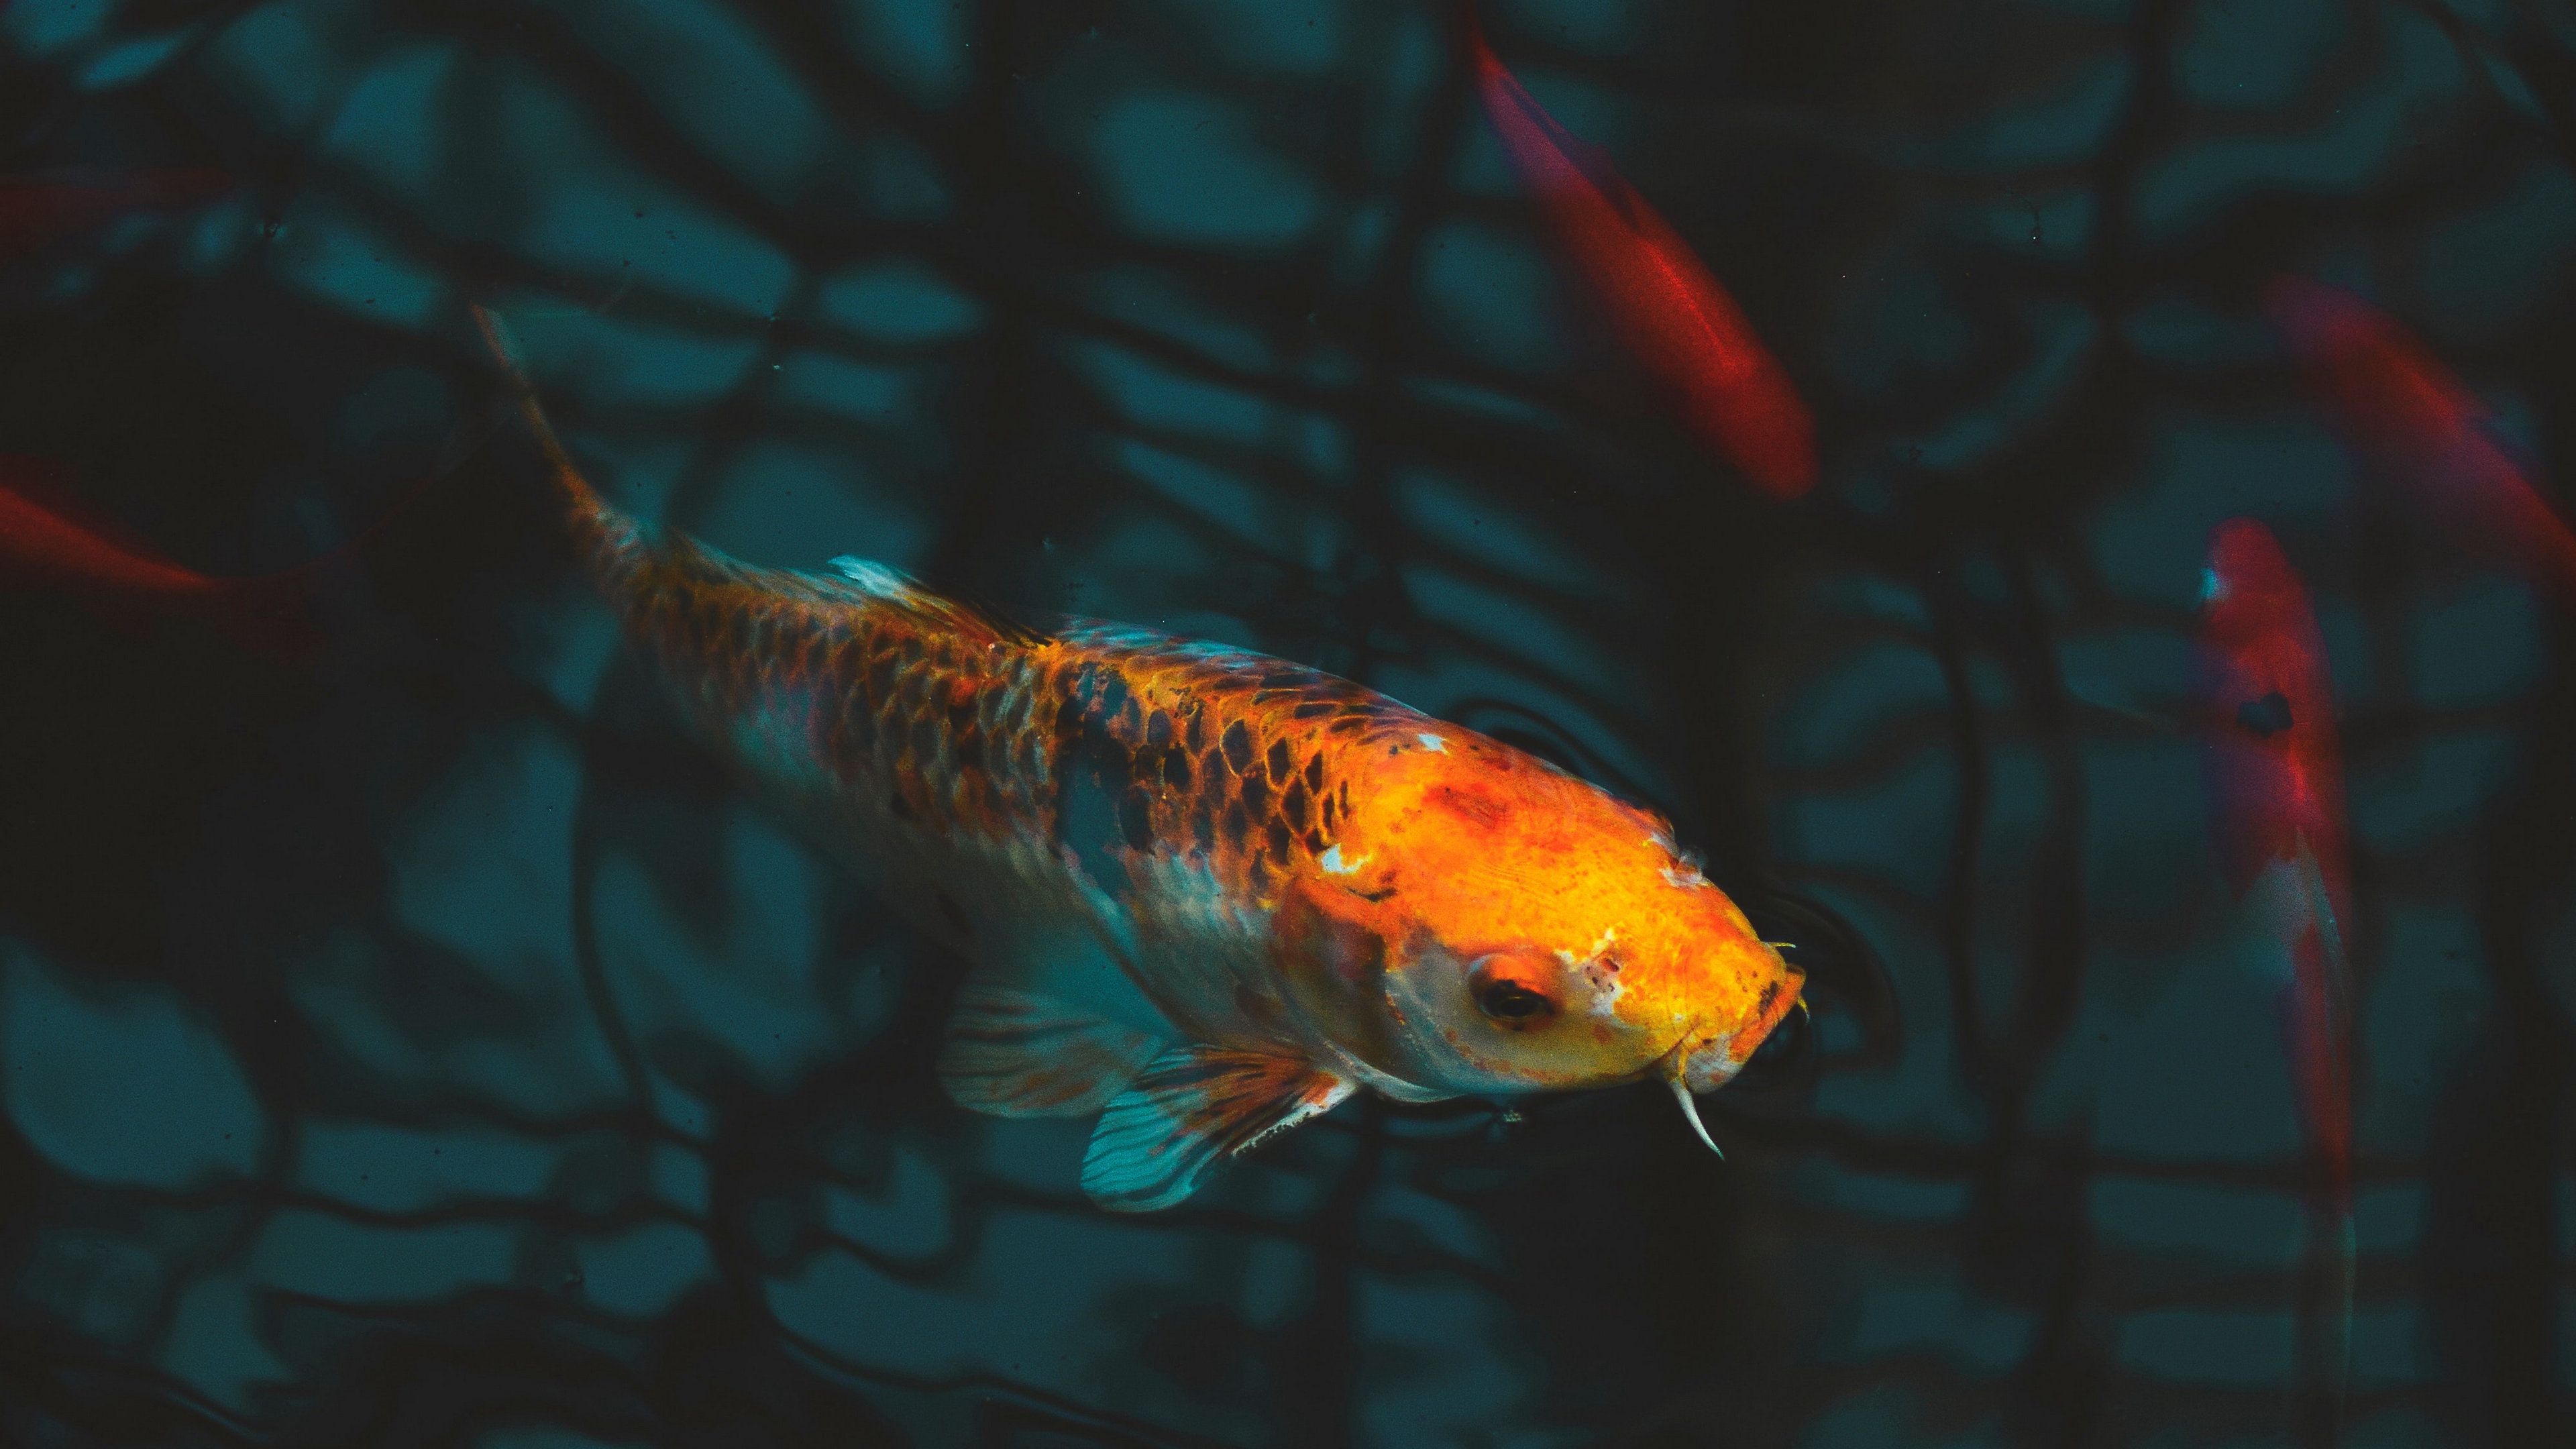 Download Wallpaper Fish, Carp, Koi, Aquarium - Koi Fish Wallpaper 4k On